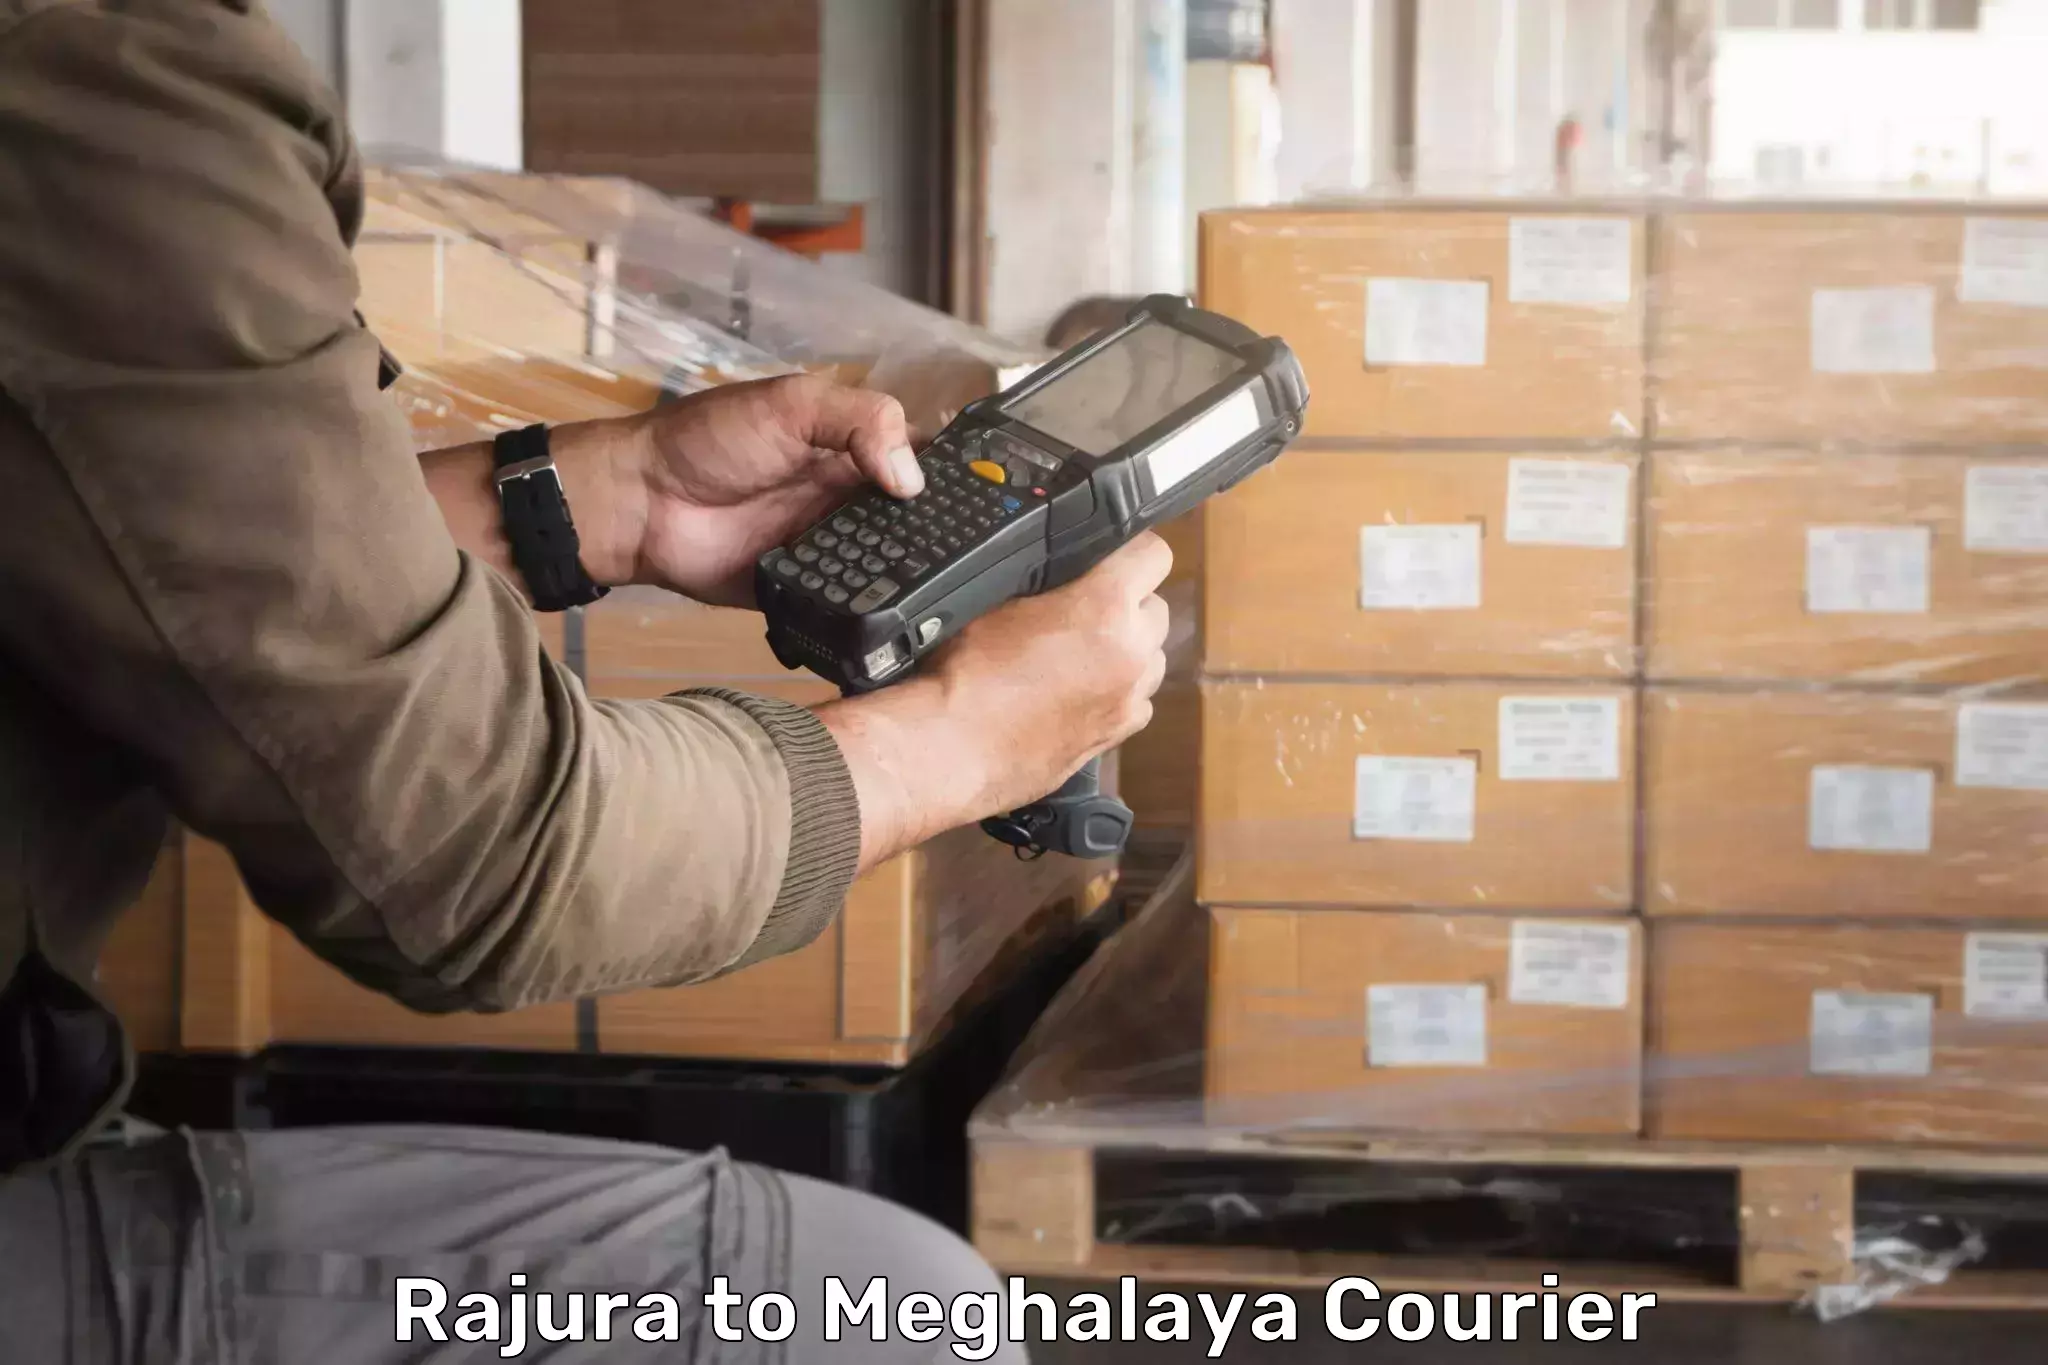 Multi-city courier Rajura to Meghalaya